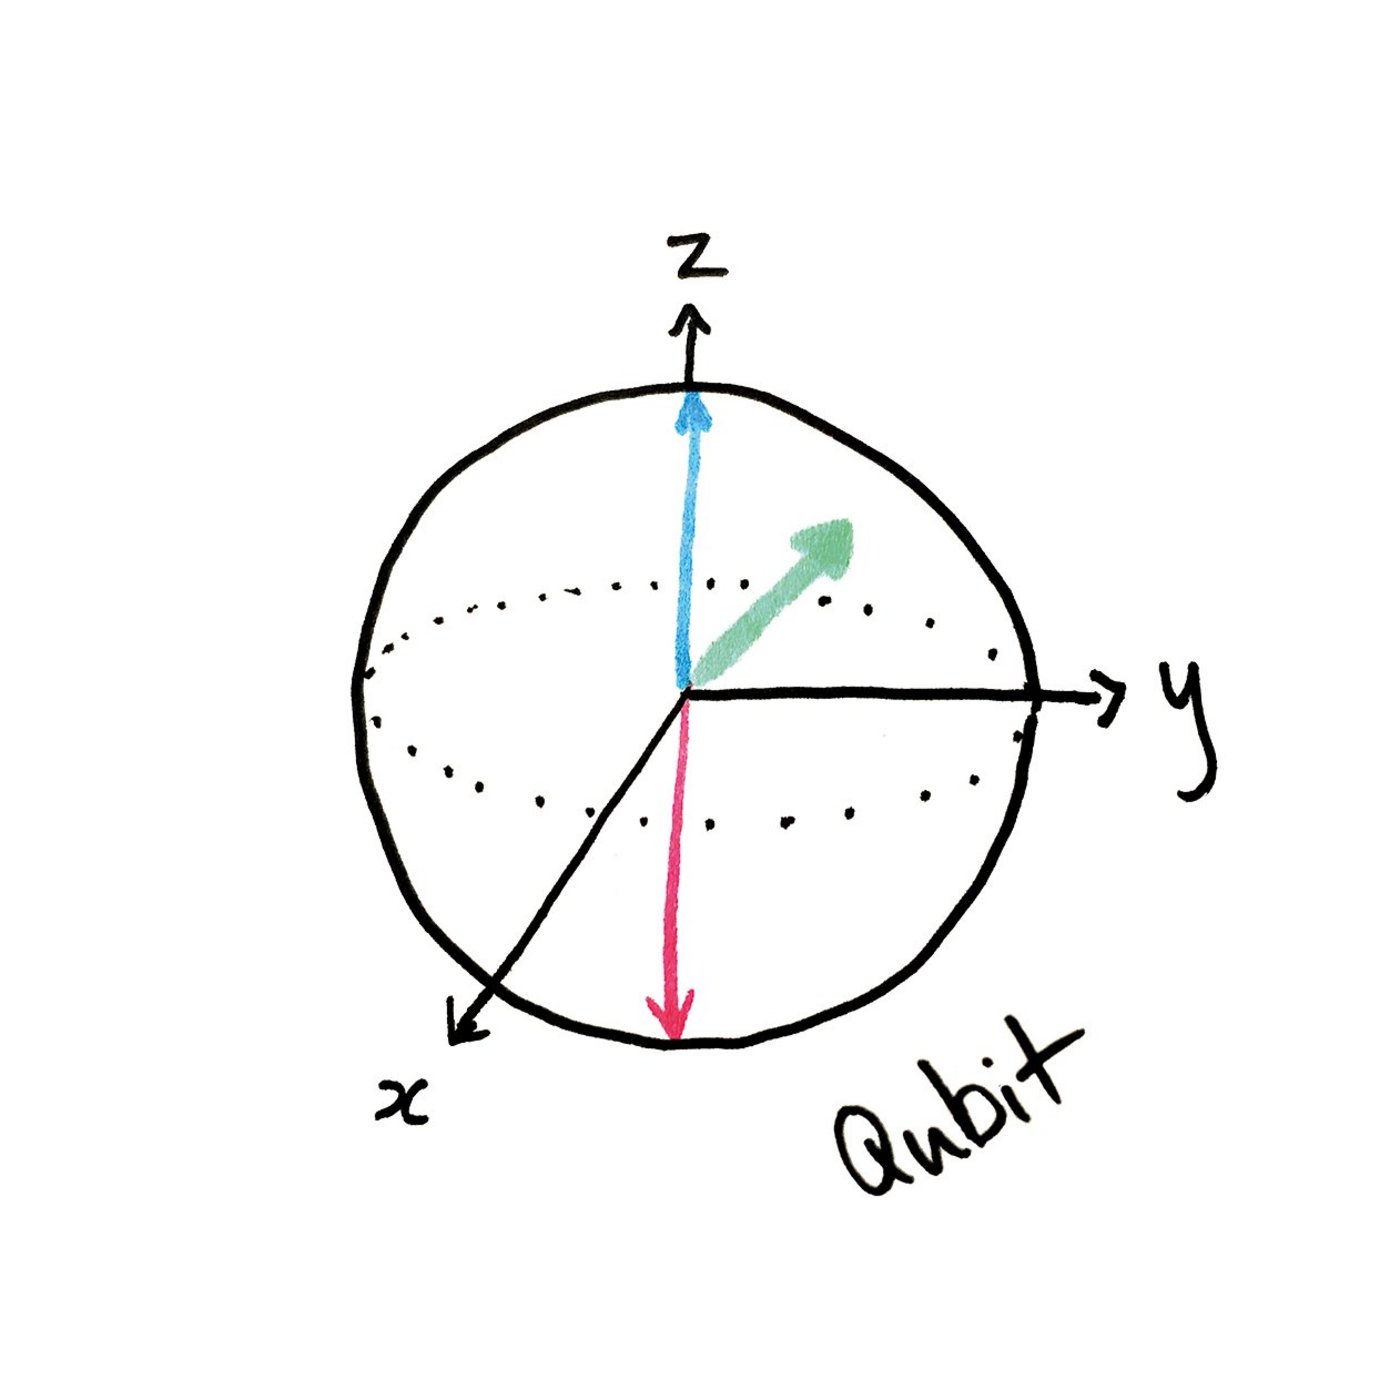 Geometric drawing of a qubit